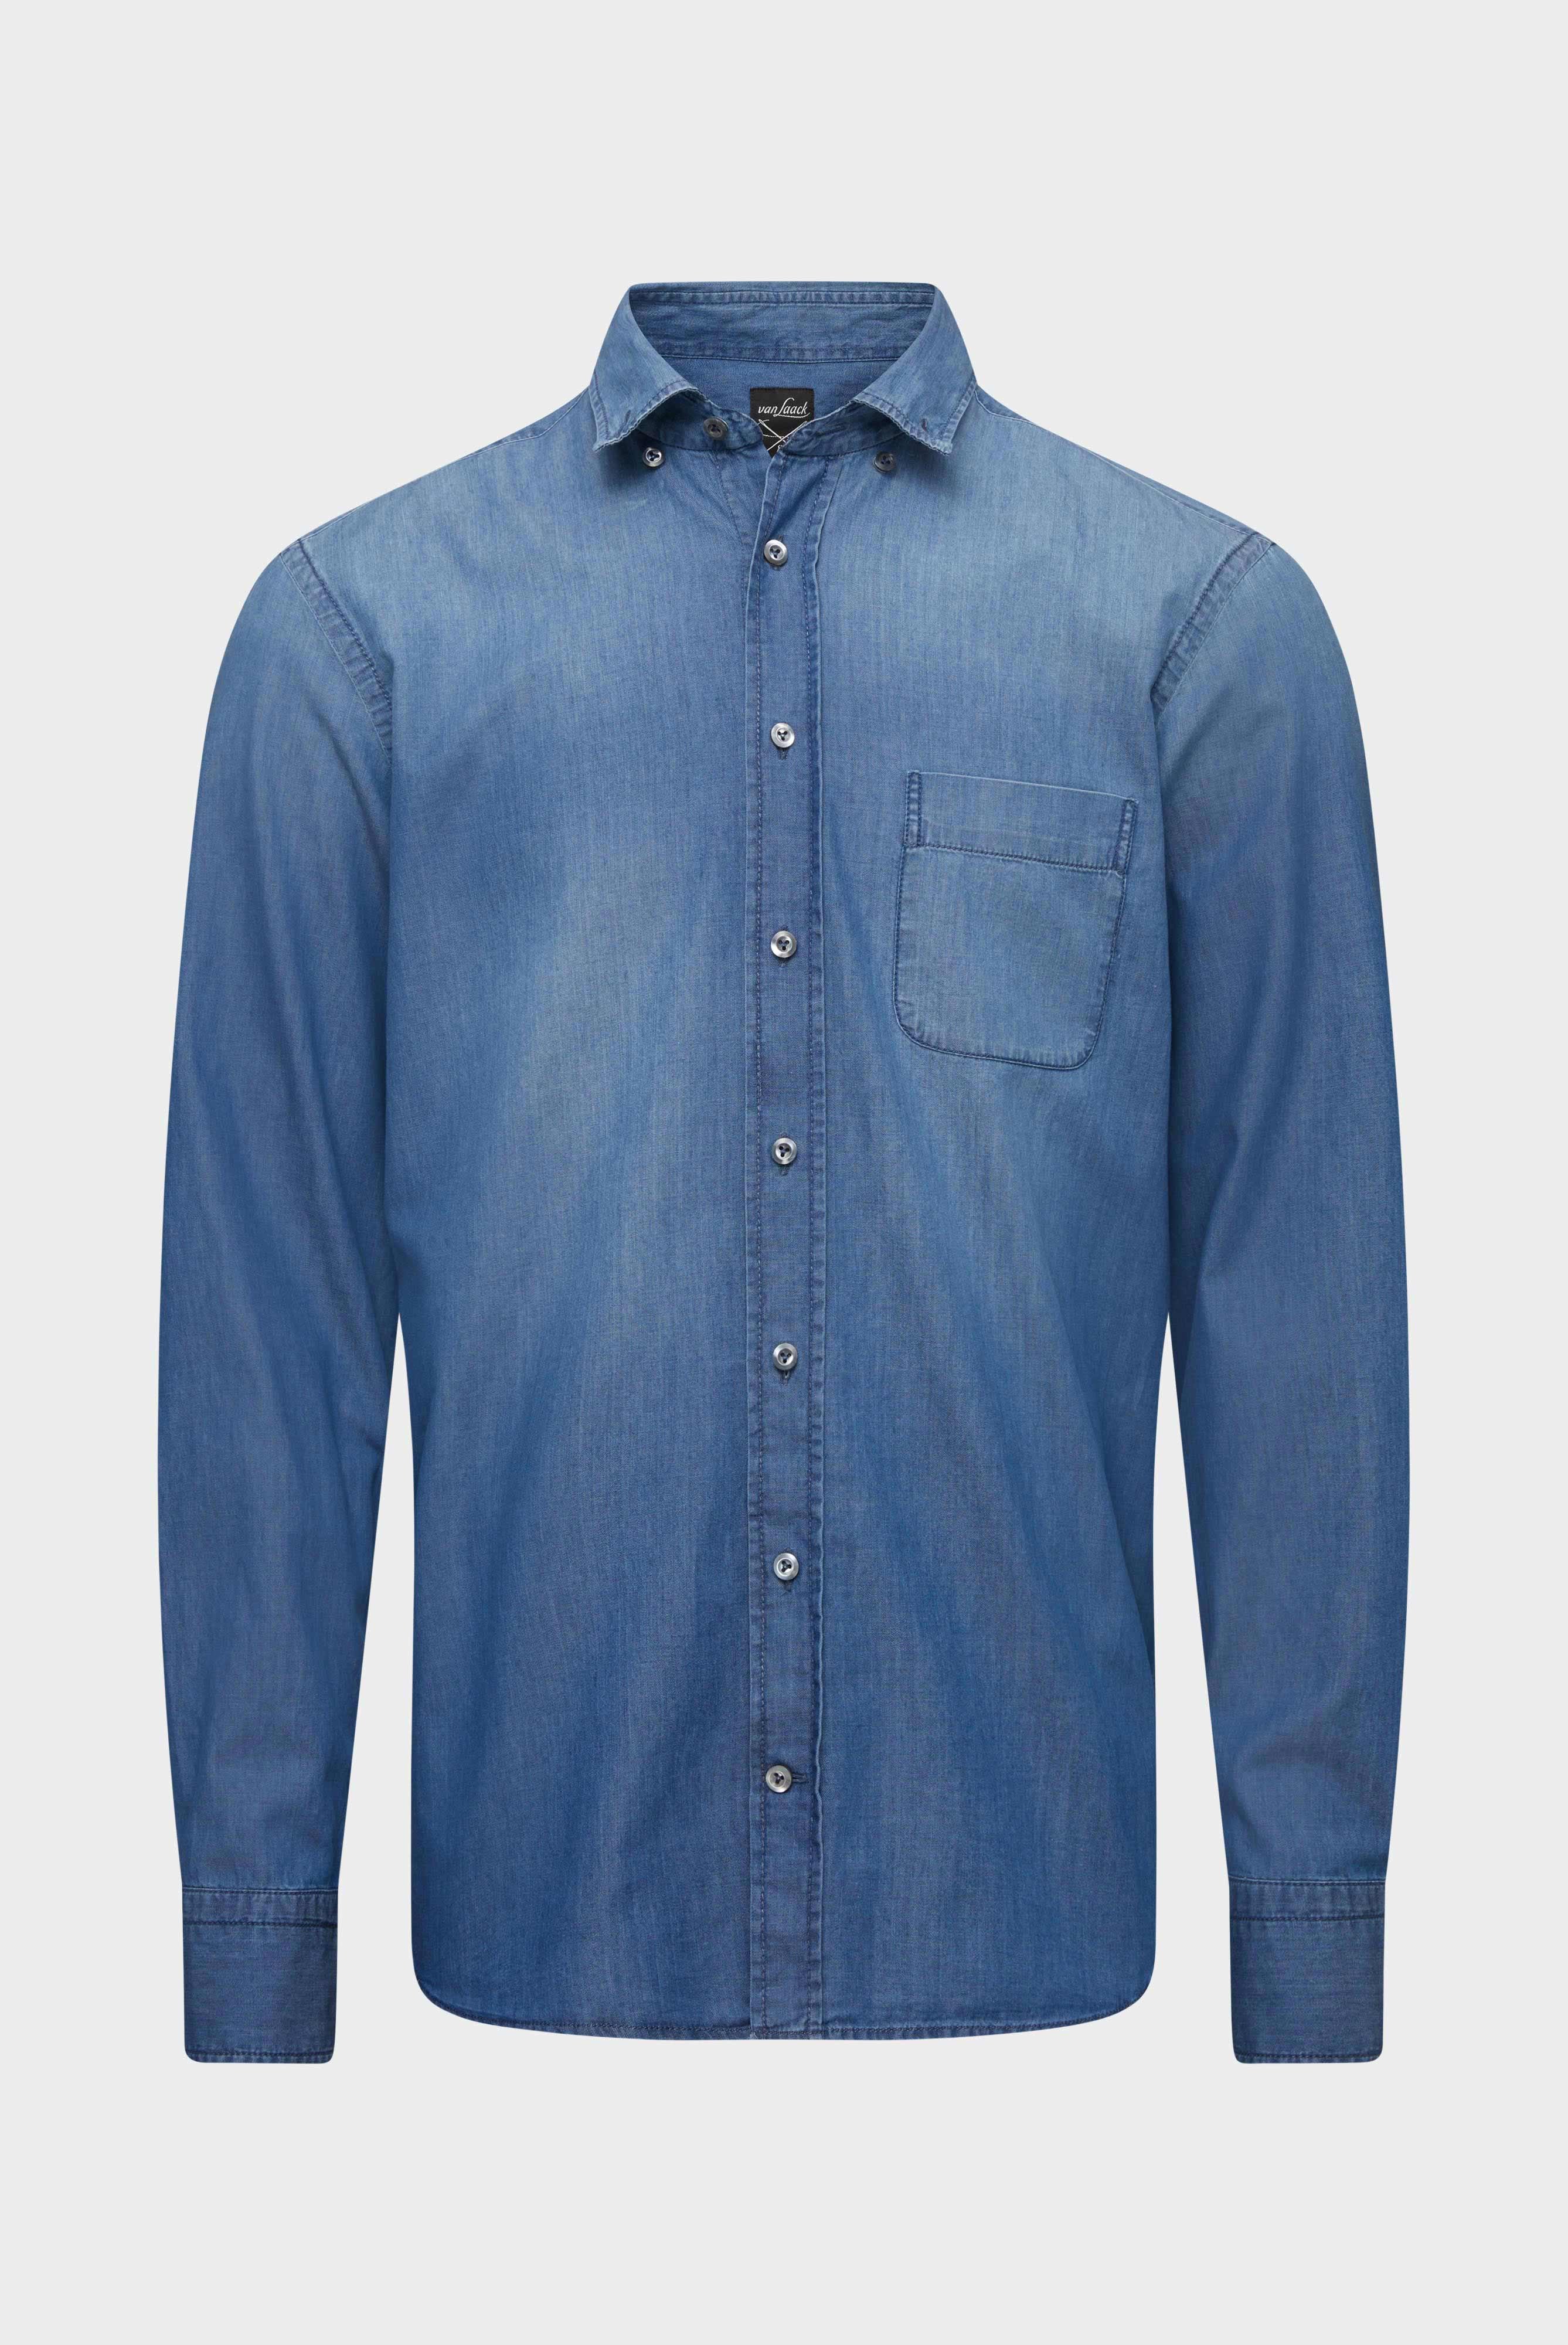 Casual Hemden+Jeans Hemd Tailor Fit+20.2013.ET.155330.740.40